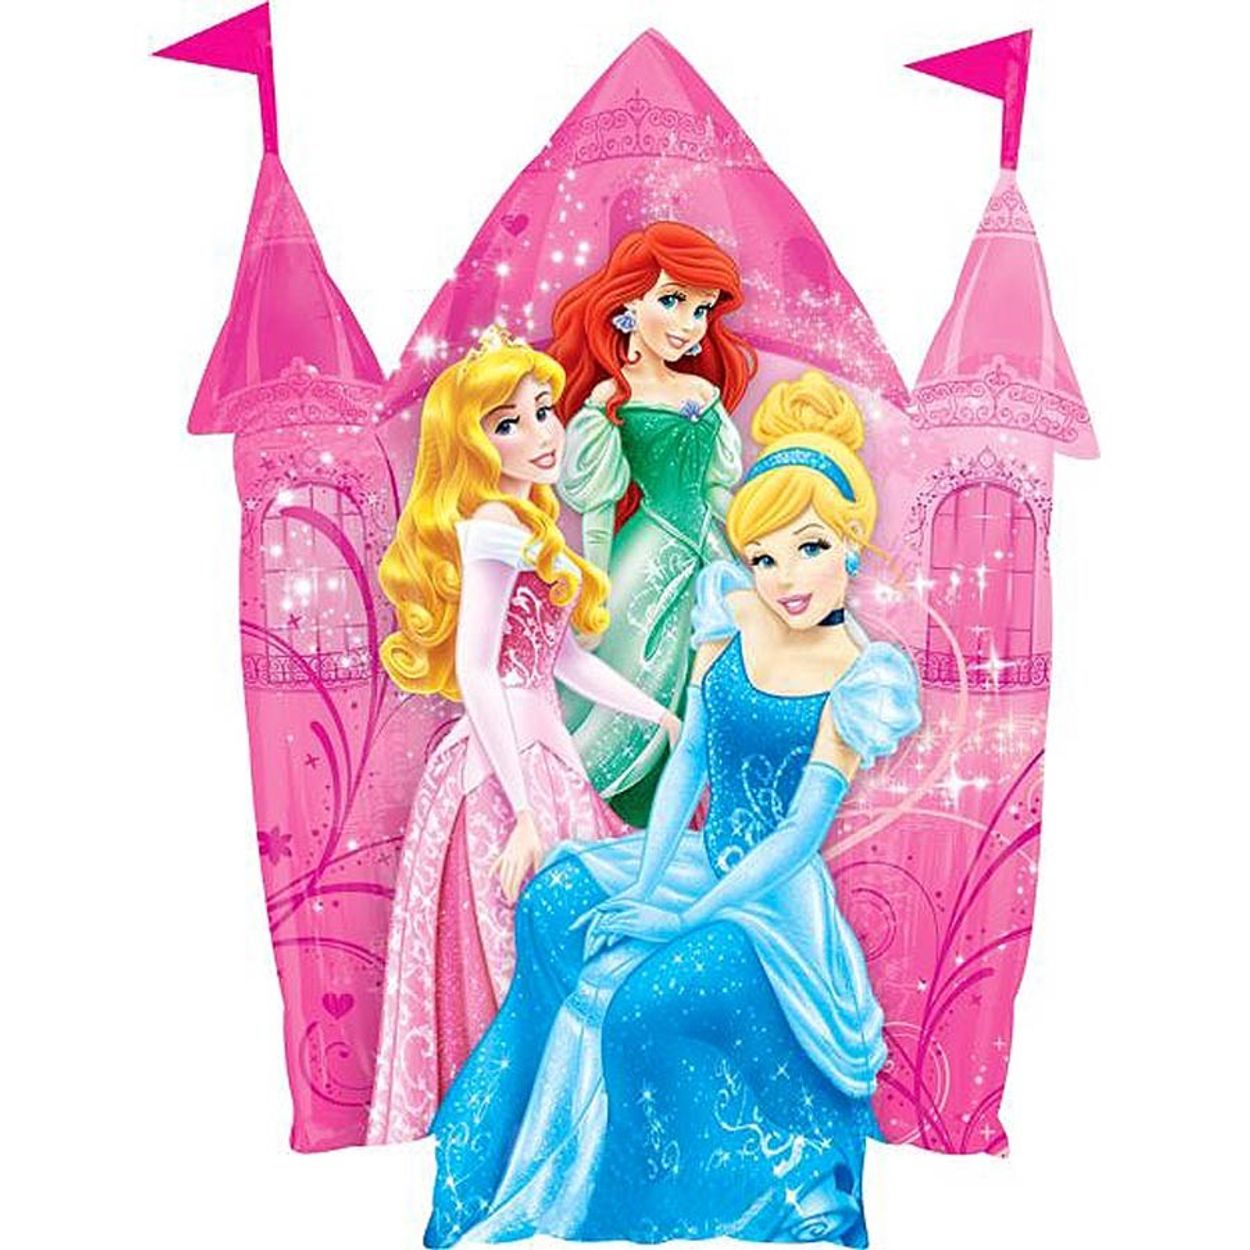 Jogos de A Grande Festa das 7 Princesas da Disney no Meninas Jogos